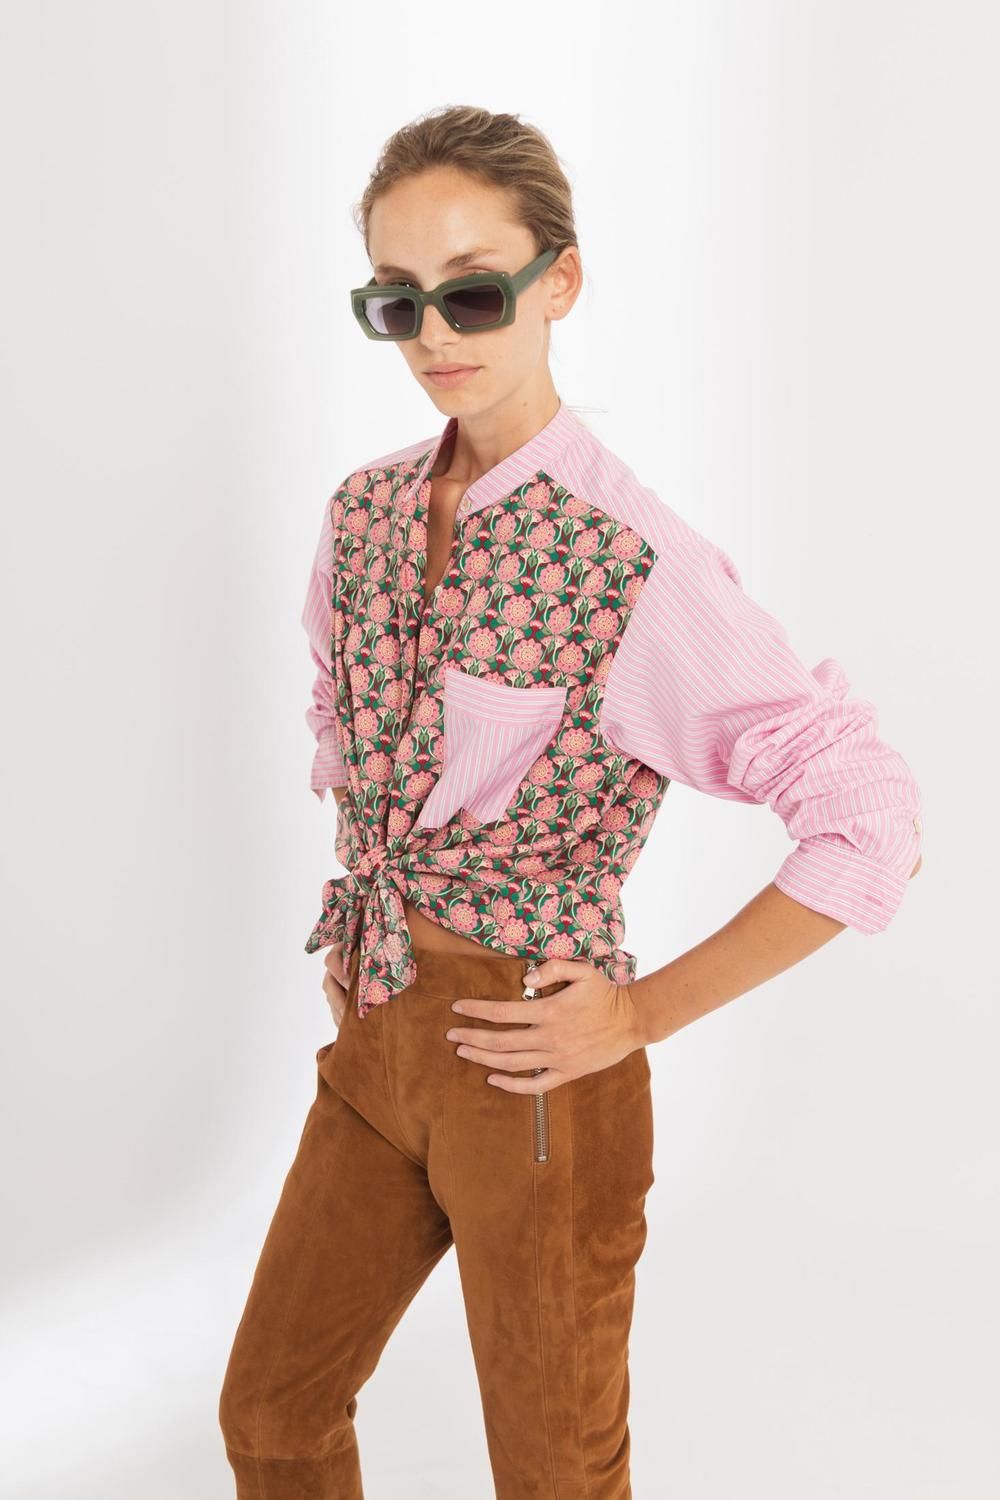 Camisa Luisa en Algodón - Mix de Flores y Rayas Rosa rosado xs